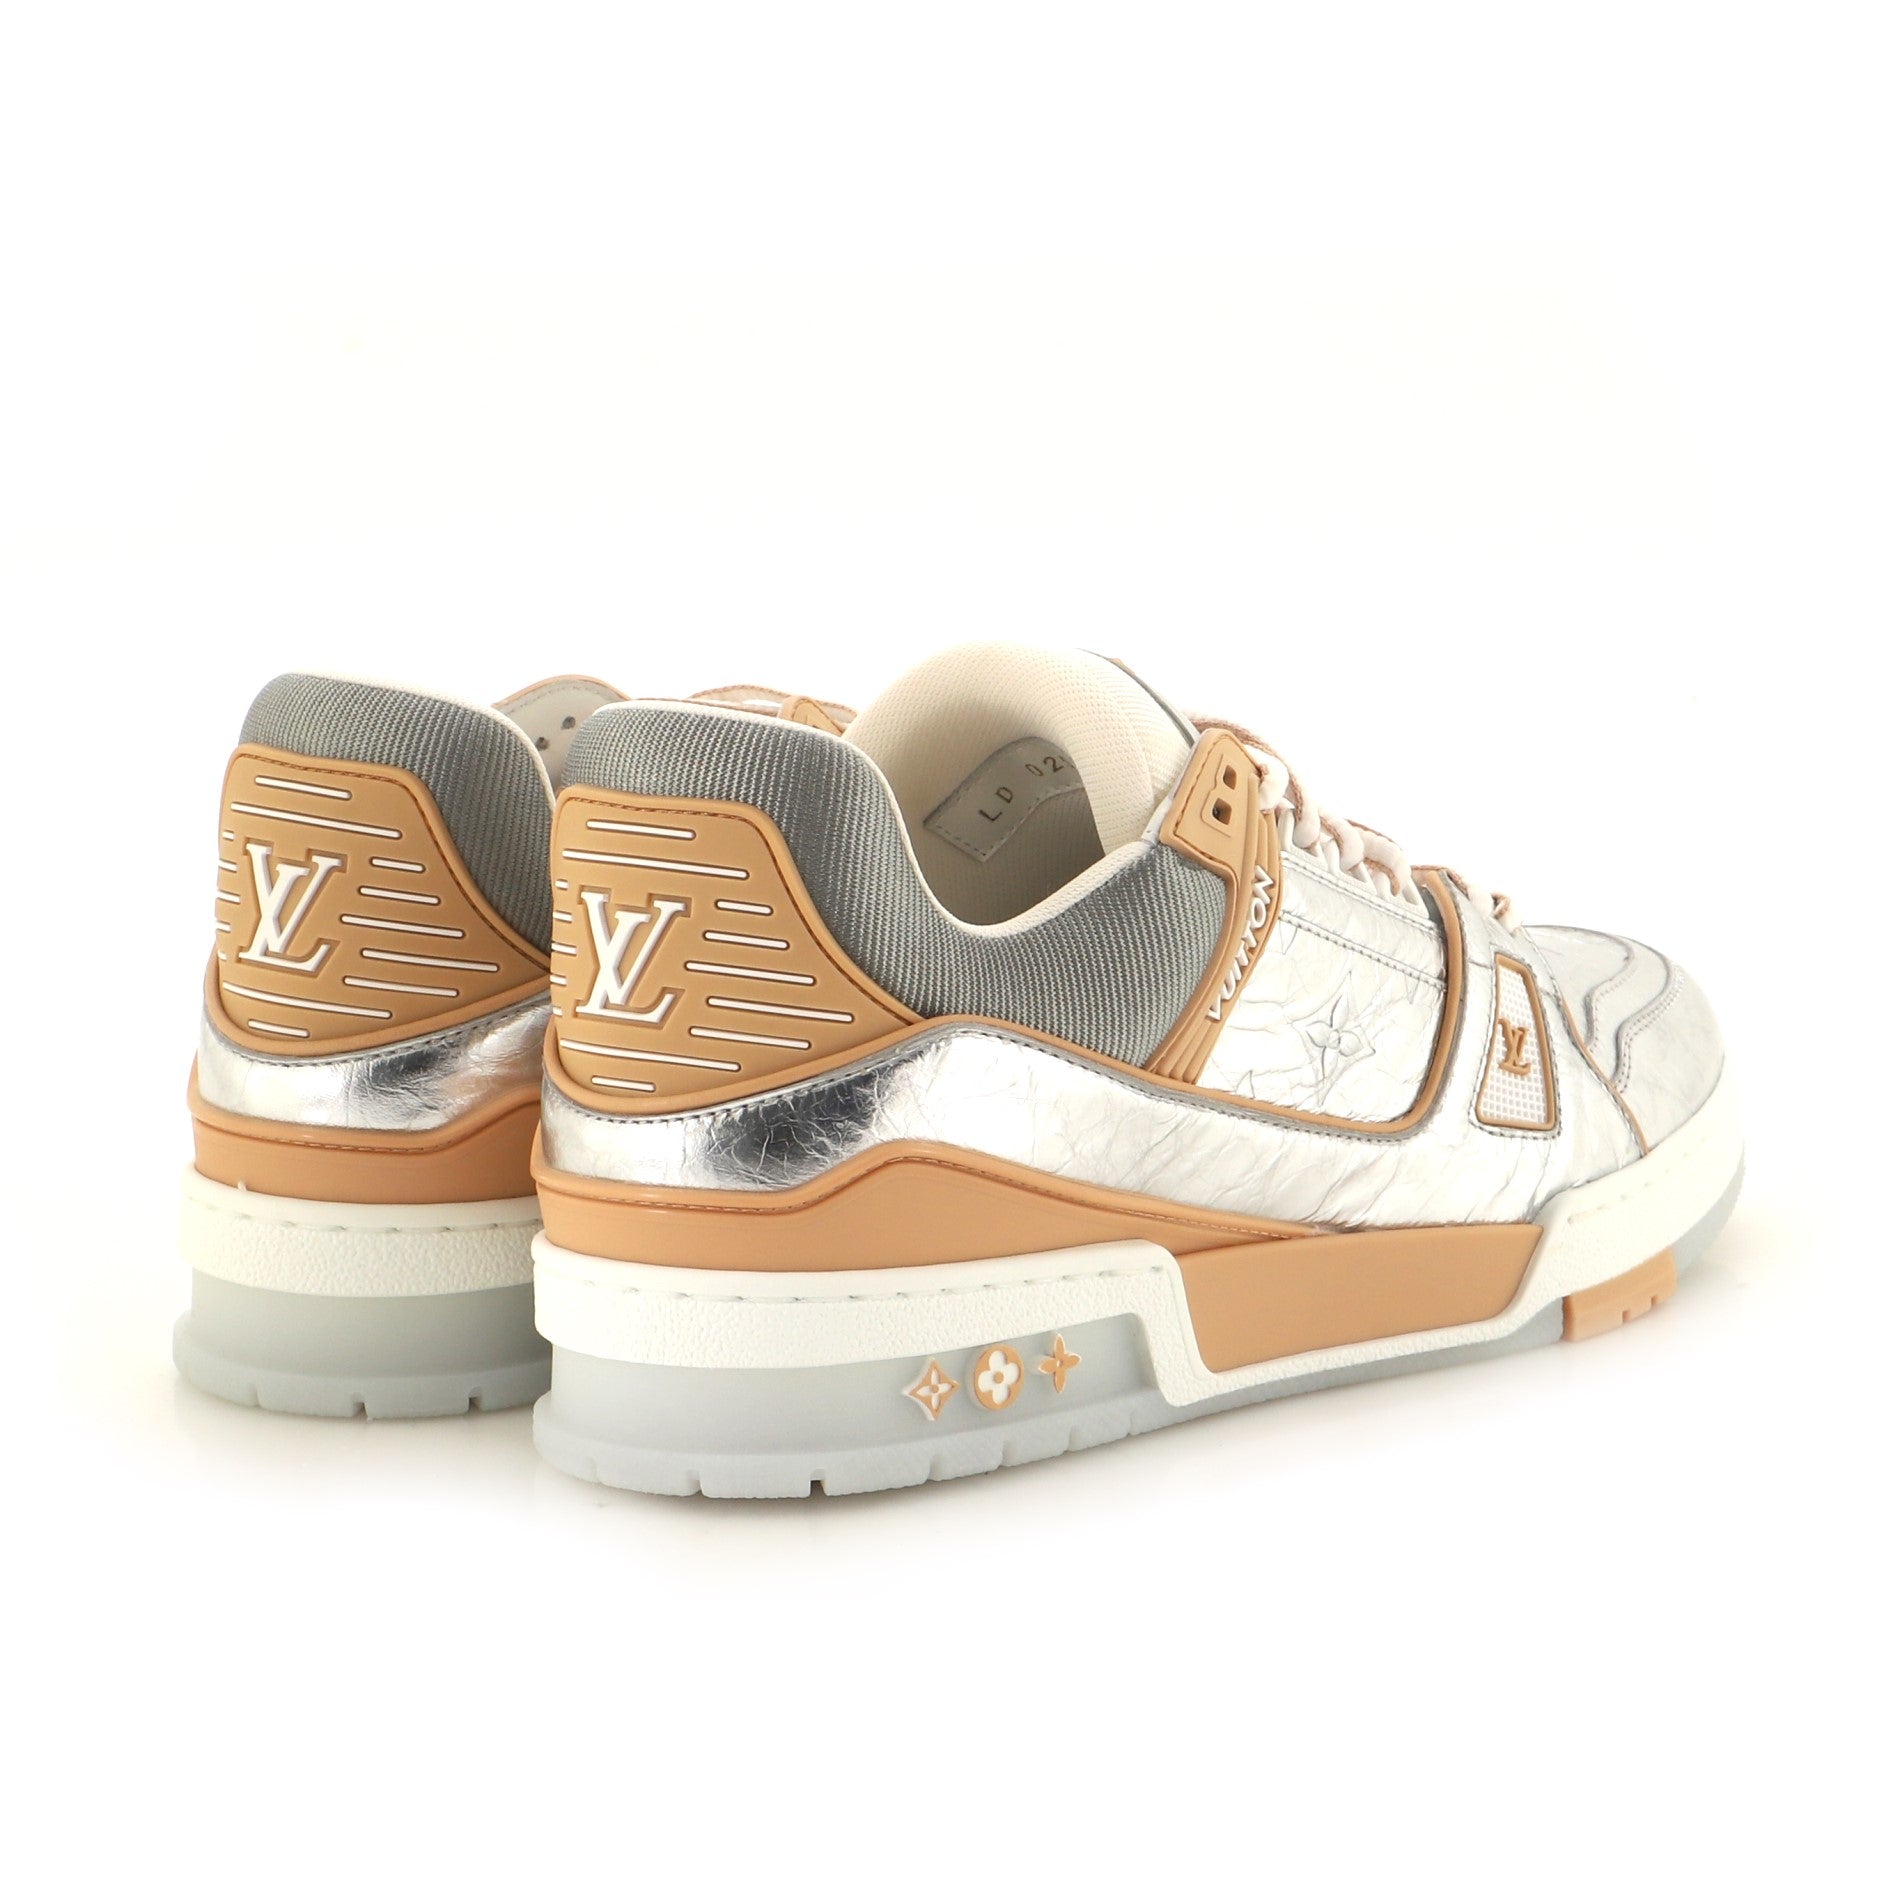 Louis Vuitton Men's LV Trainer Sneakers Monogram Taigarama Orange